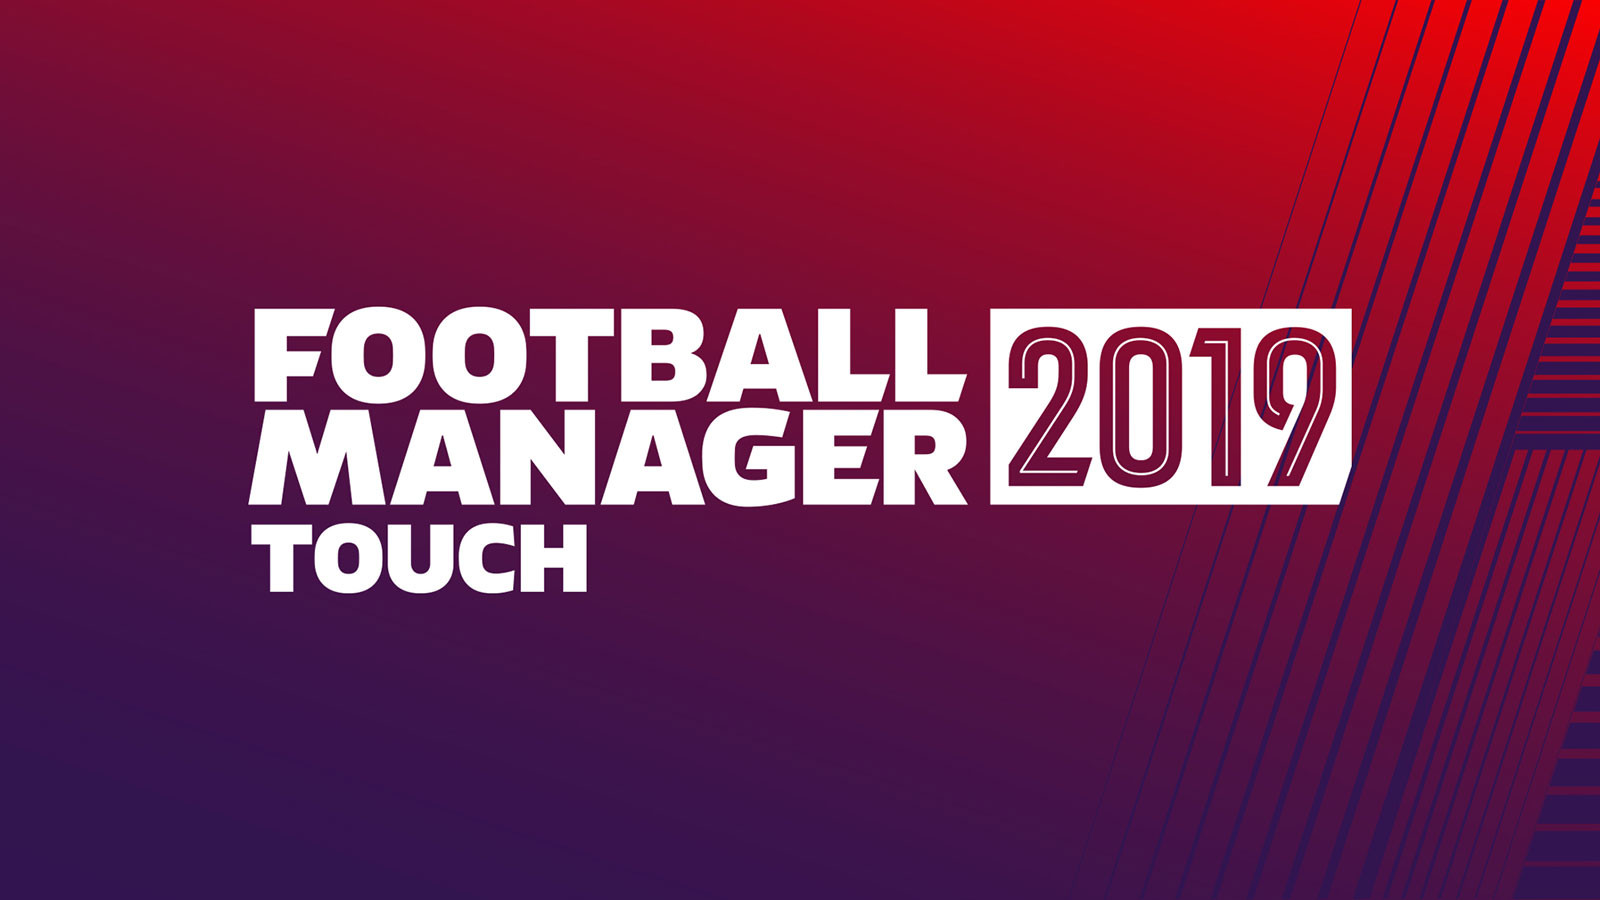 jaquette du jeu vidéo Football Manager 2019 Touch